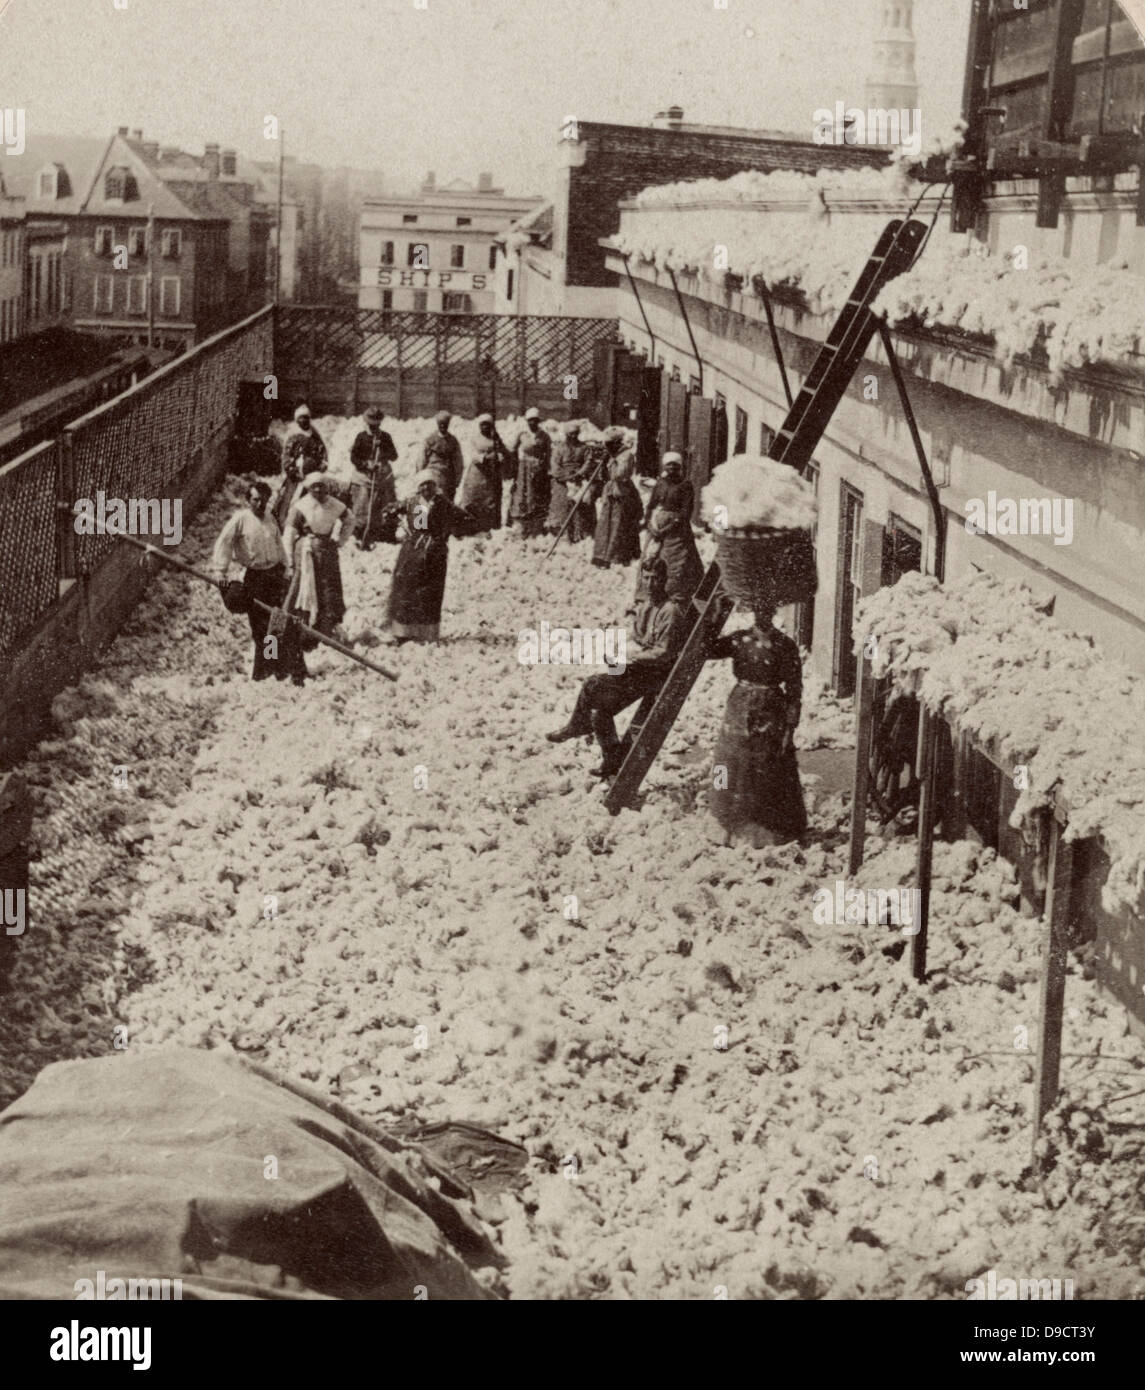 Magazzino di cotone, l'asciugatura cotone, Charleston, Carolina del Sud. Americani africani, soprattutto donne, con due uomini bianchi sul tetto del magazzino di cotone, circondato da asciugatura cotone, circa 1879 Foto Stock